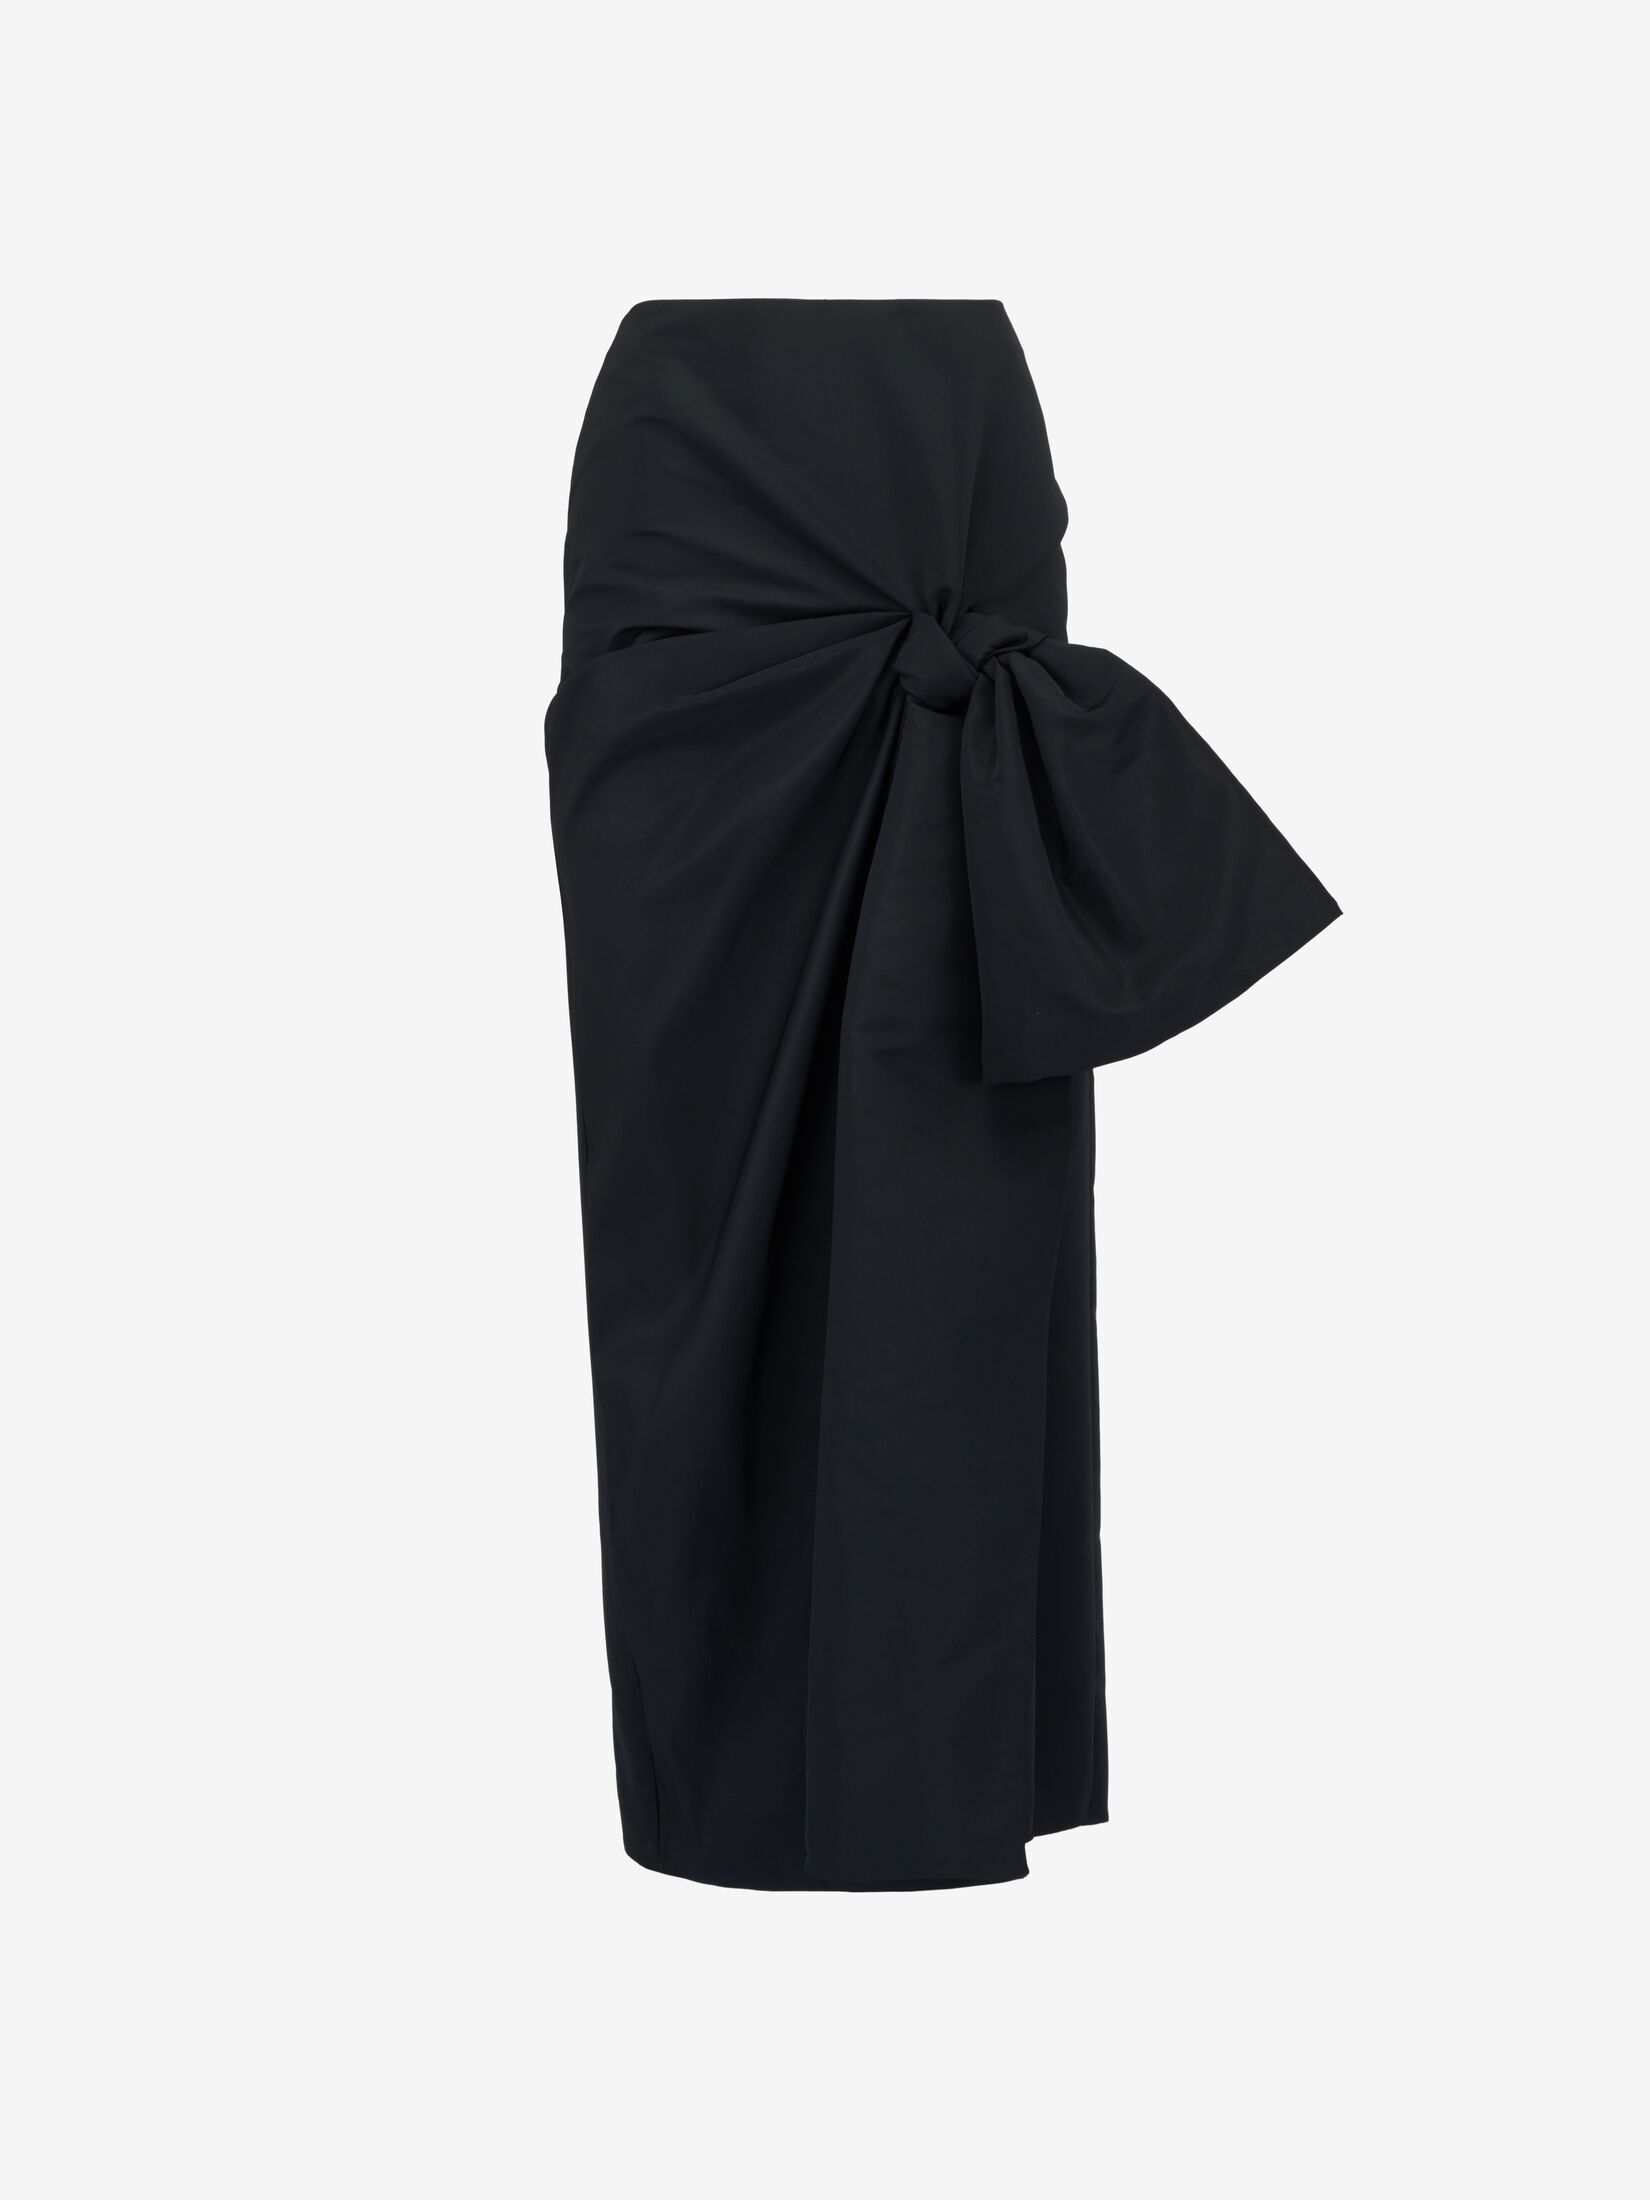 Bow Detail Slim Skirt